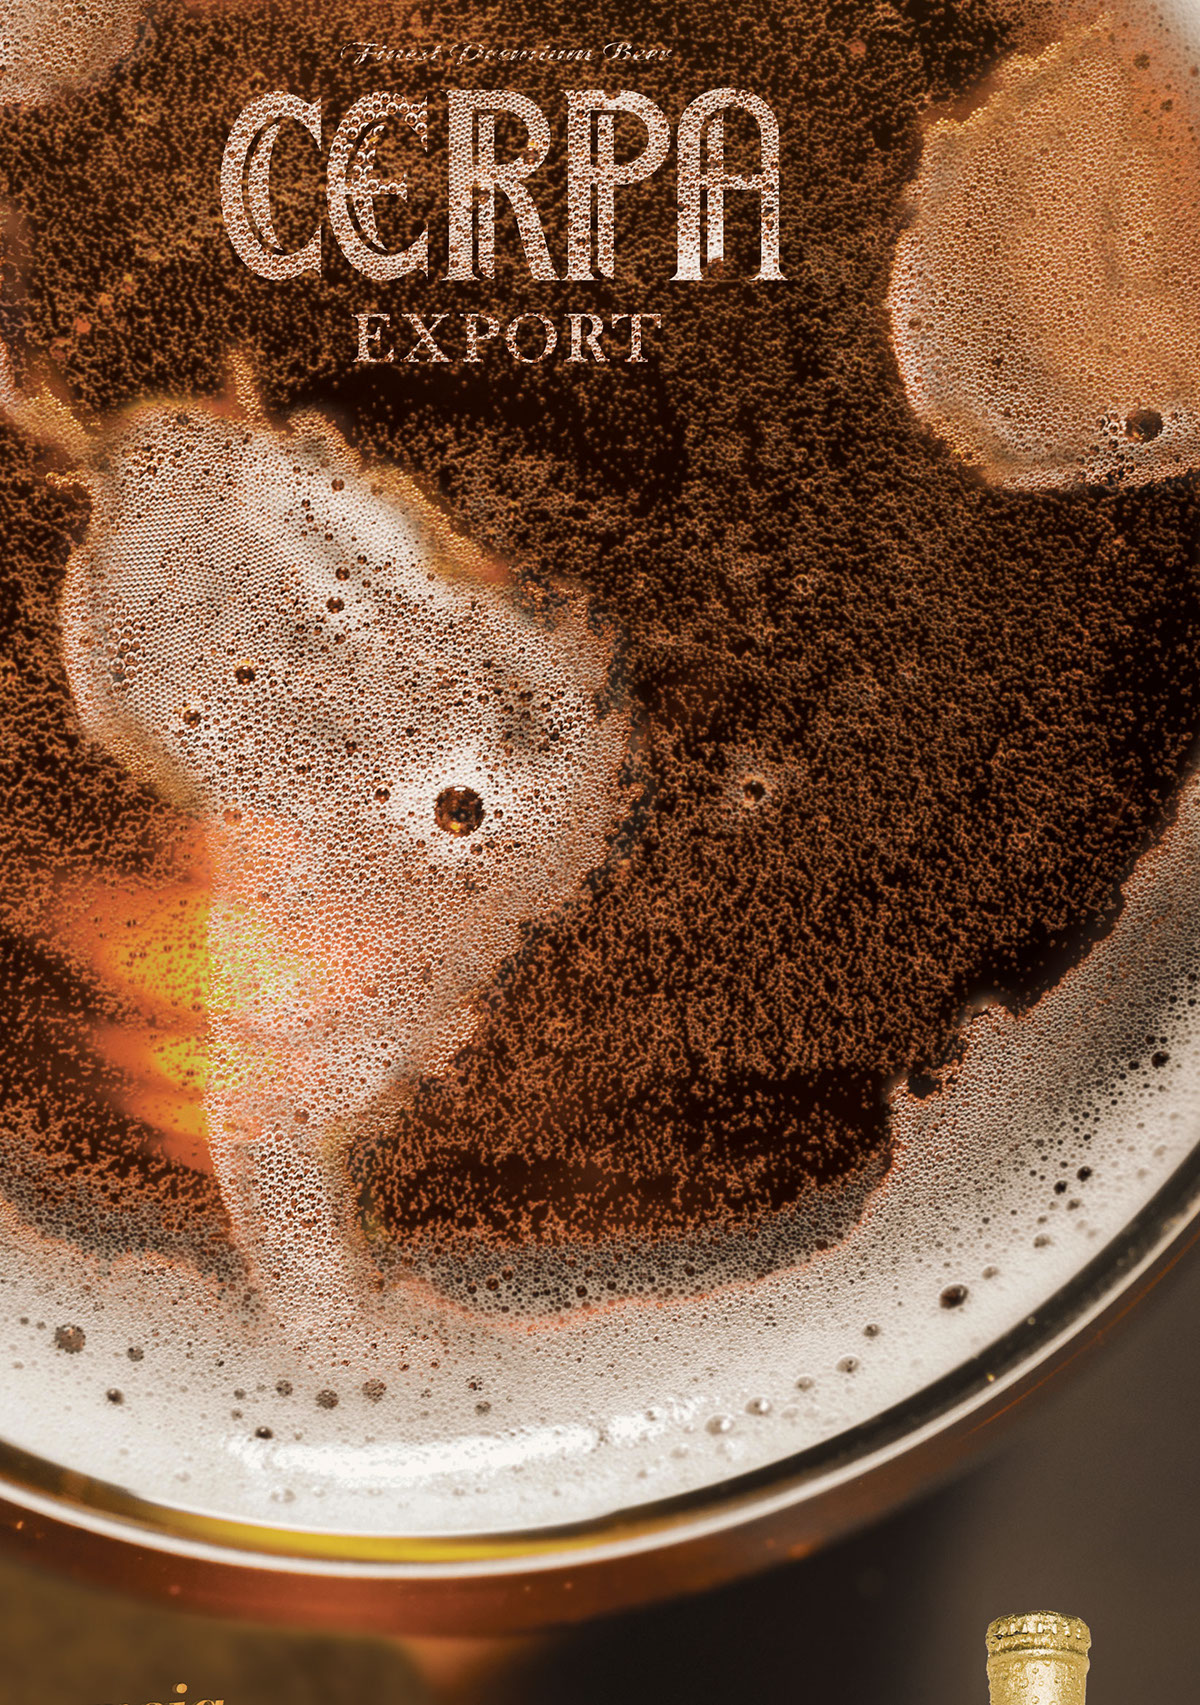 CERPA beer Cerveja export